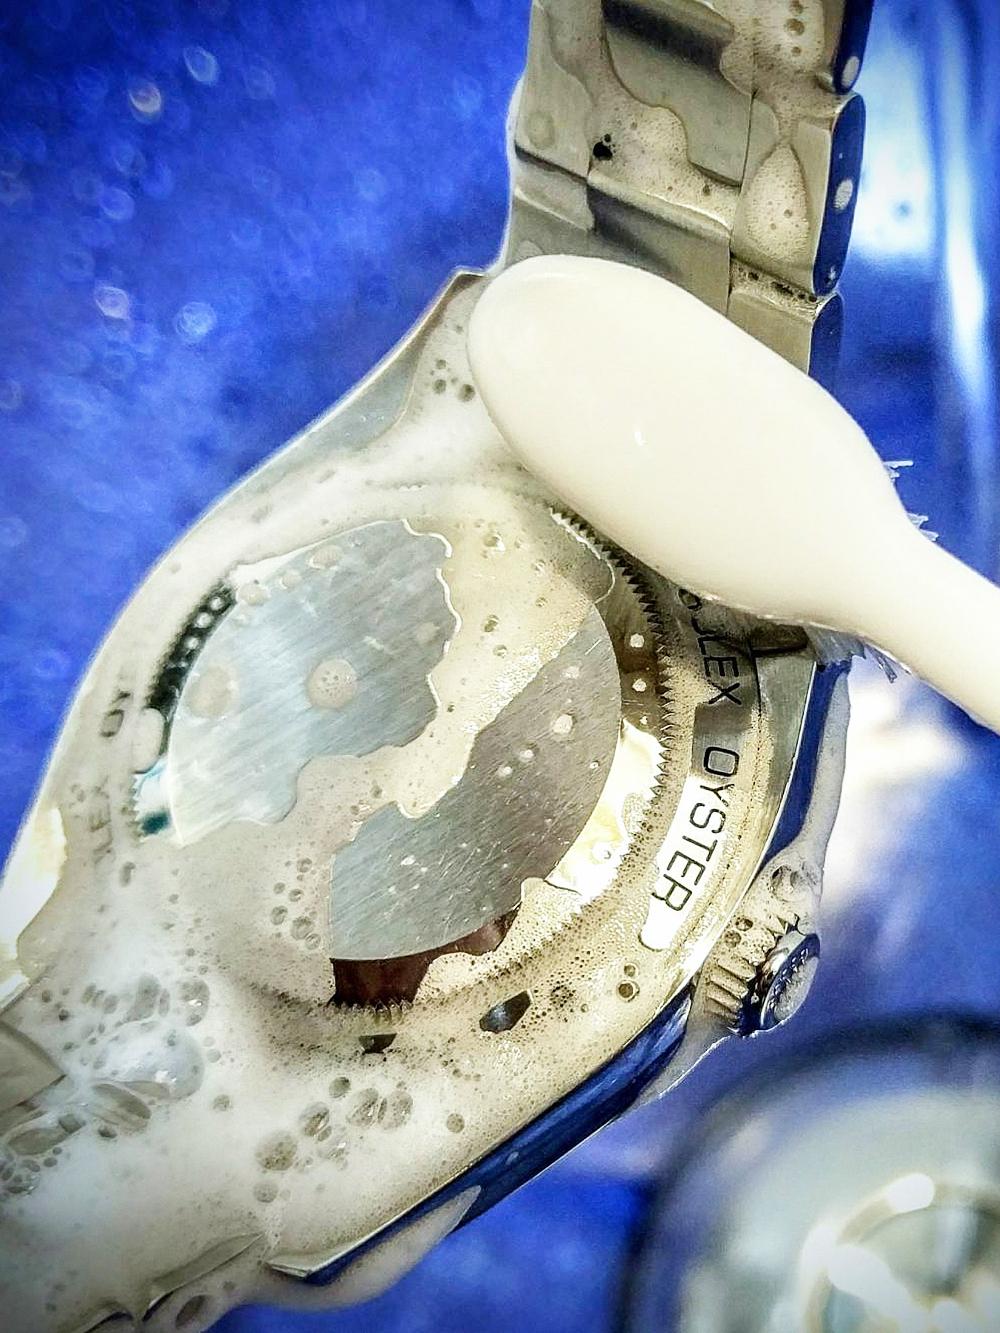 具鎖入式龍頭或原廠防水深度標示在100米以上的錶款，可直接以軟毛牙刷沾上中性清潔劑輕輕刷洗，後以細纖維布或眼鏡布將水份吸乾即可。請記得一定要確實將龍頭鎖緊，同時建議每年將愛錶送廠檢測防水功能，以免日常佩戴或清潔時進水。